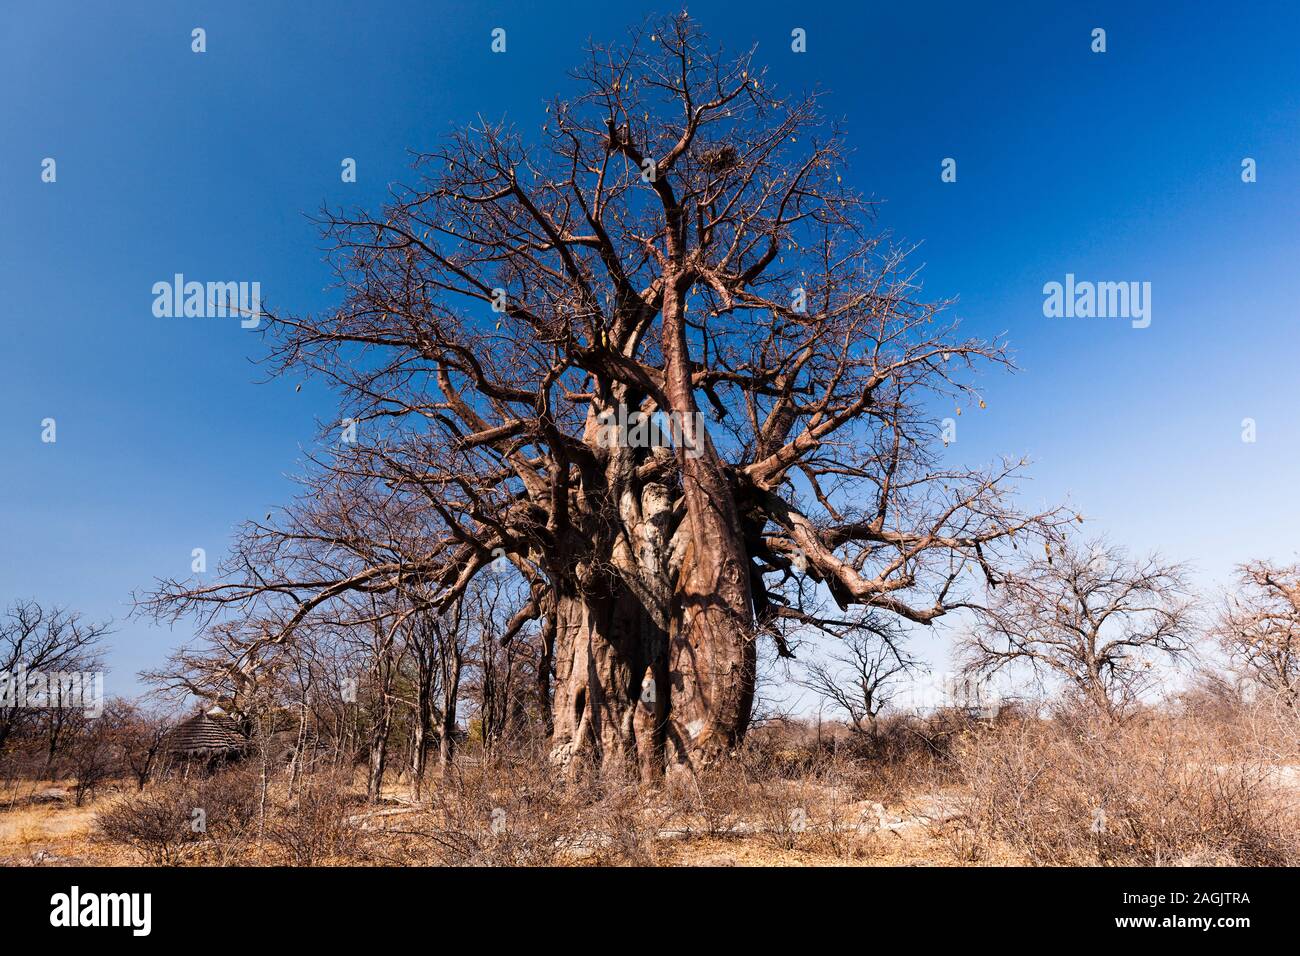 Big baobab tree at 'planet baobab', near Gweta,Central District, Botswana Africa Stock Photo